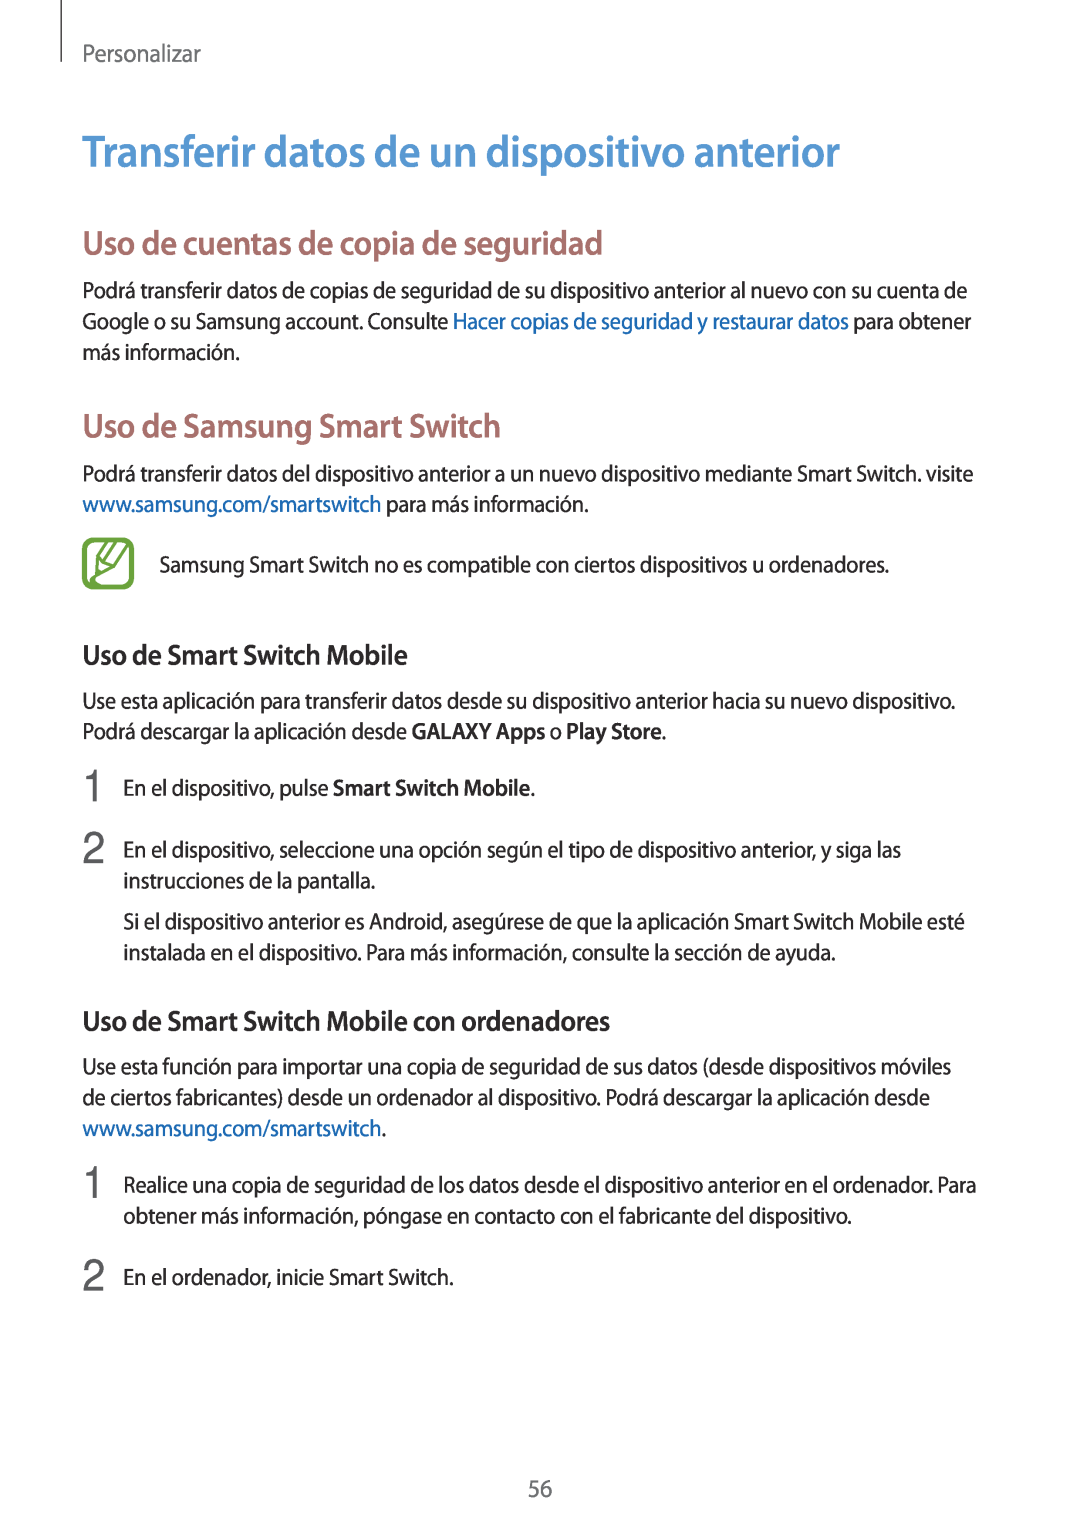 Samsung SM-A500FZKUPHE Transferir datos de un dispositivo anterior, Uso de cuentas de copia de seguridad, Personalizar 